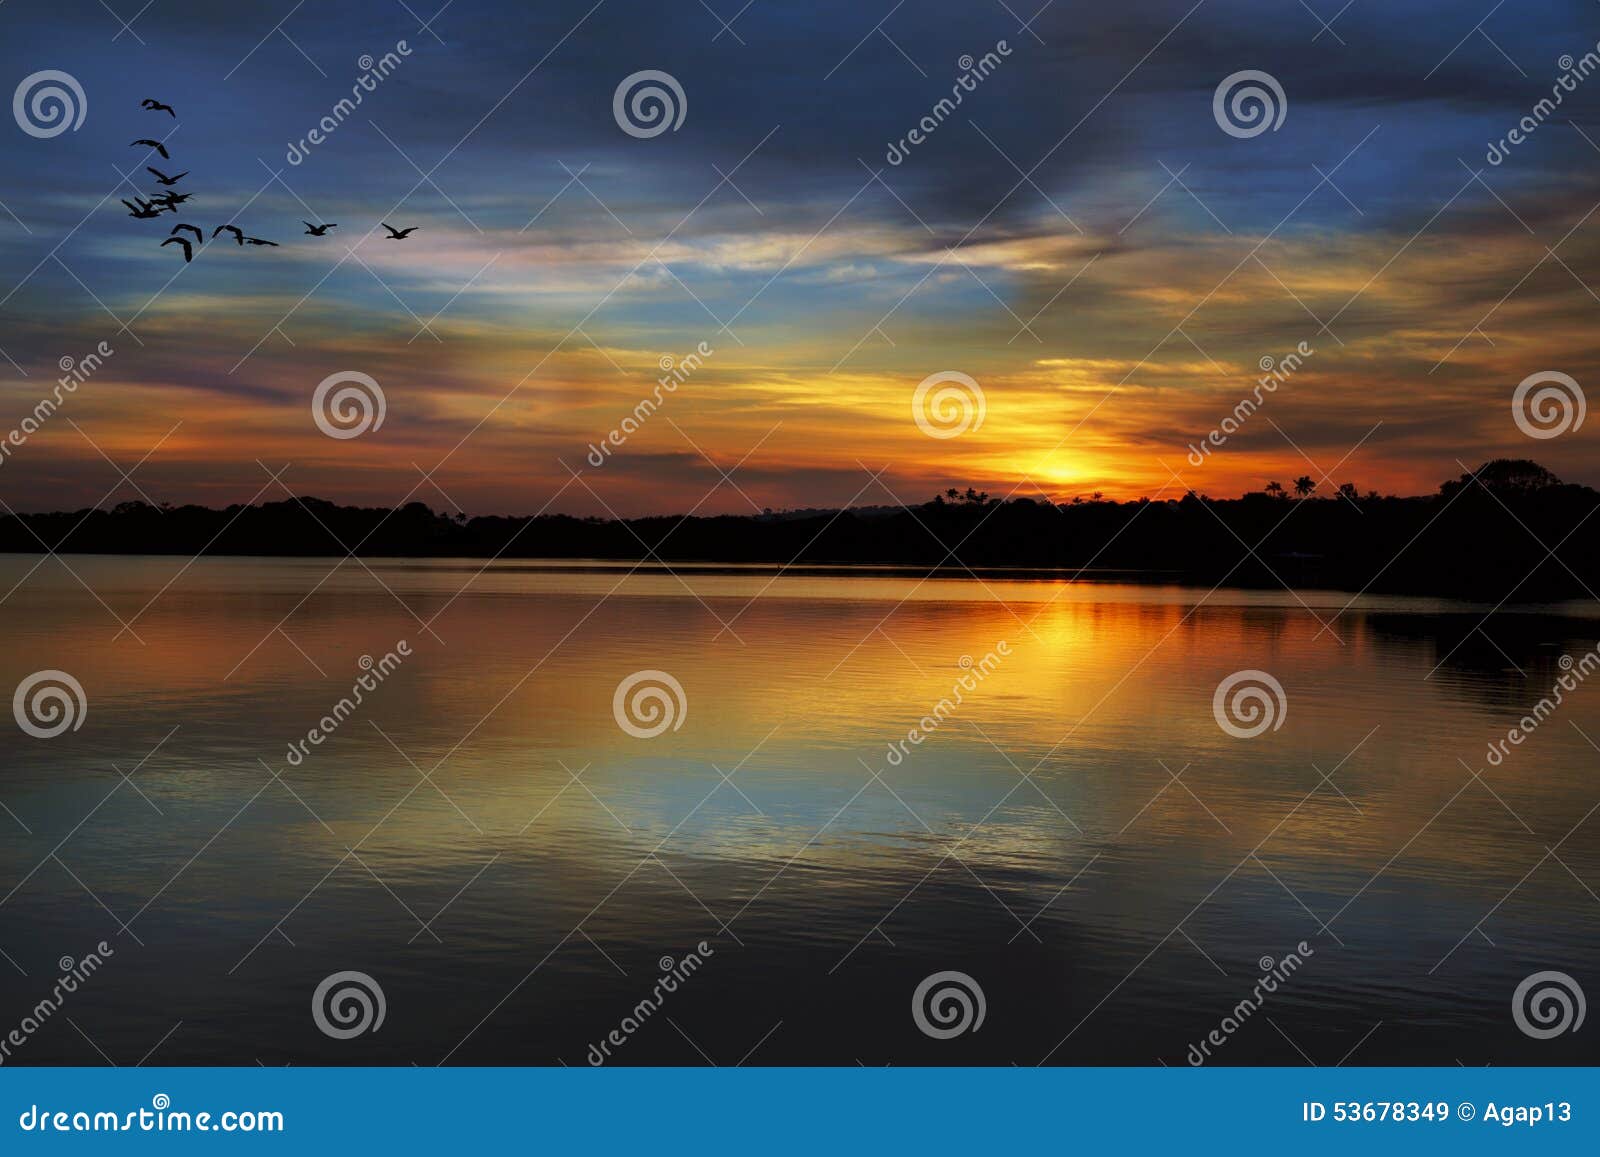 sunset on the rio negro